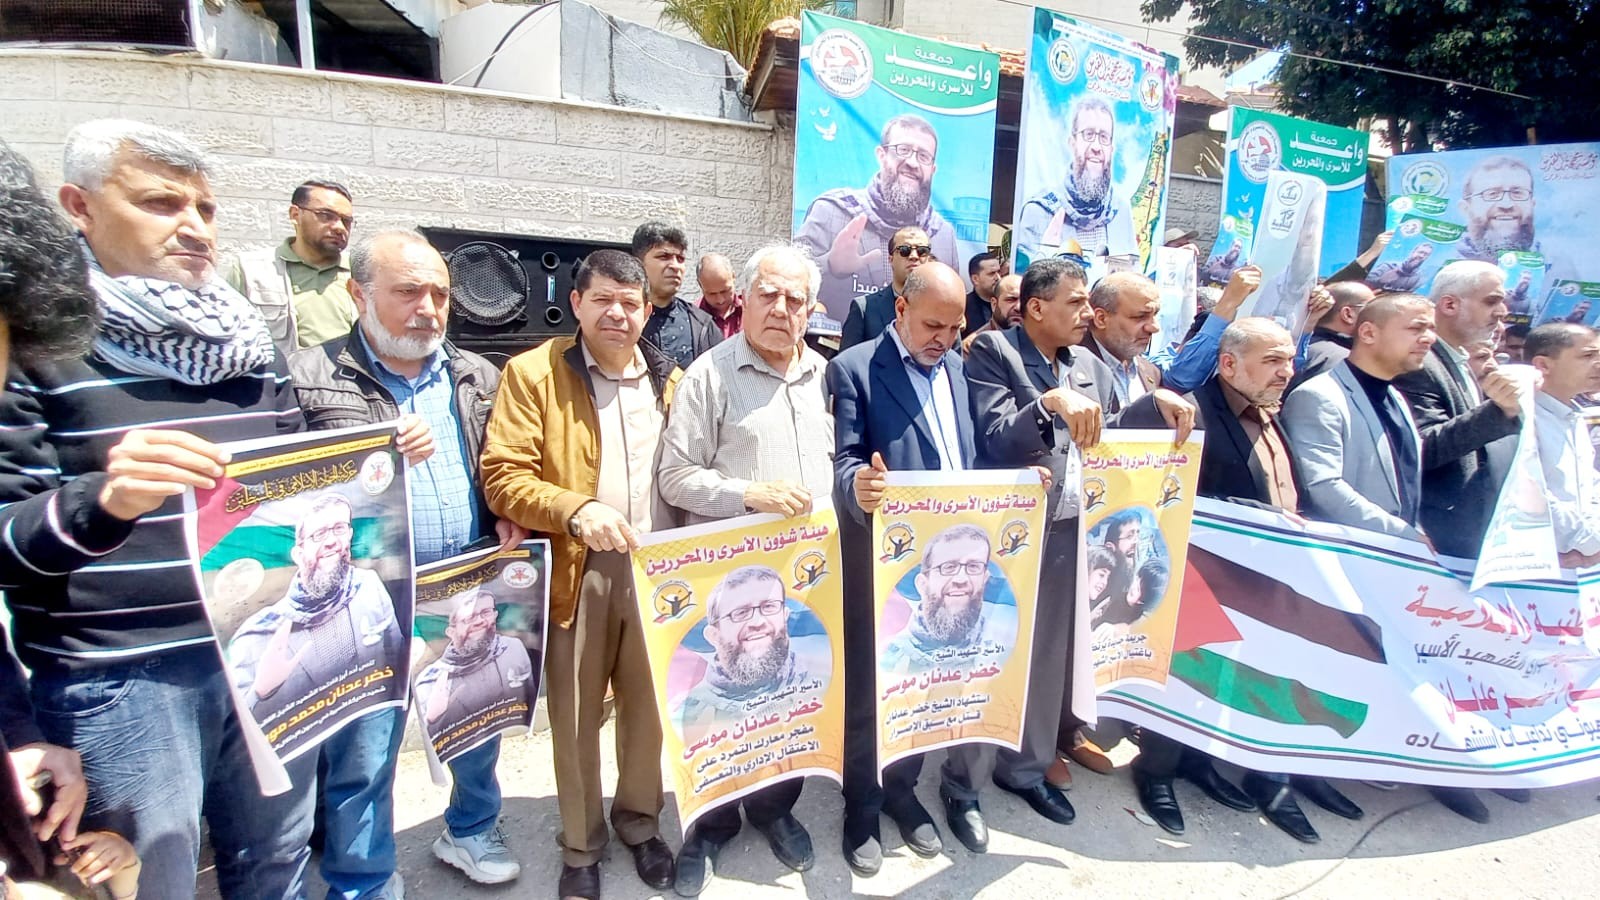 التجمع الفلسطيني للوطن و الشتات يشارك في الوقفة احتجاجية على استشهاد خضر عدنان.jpg